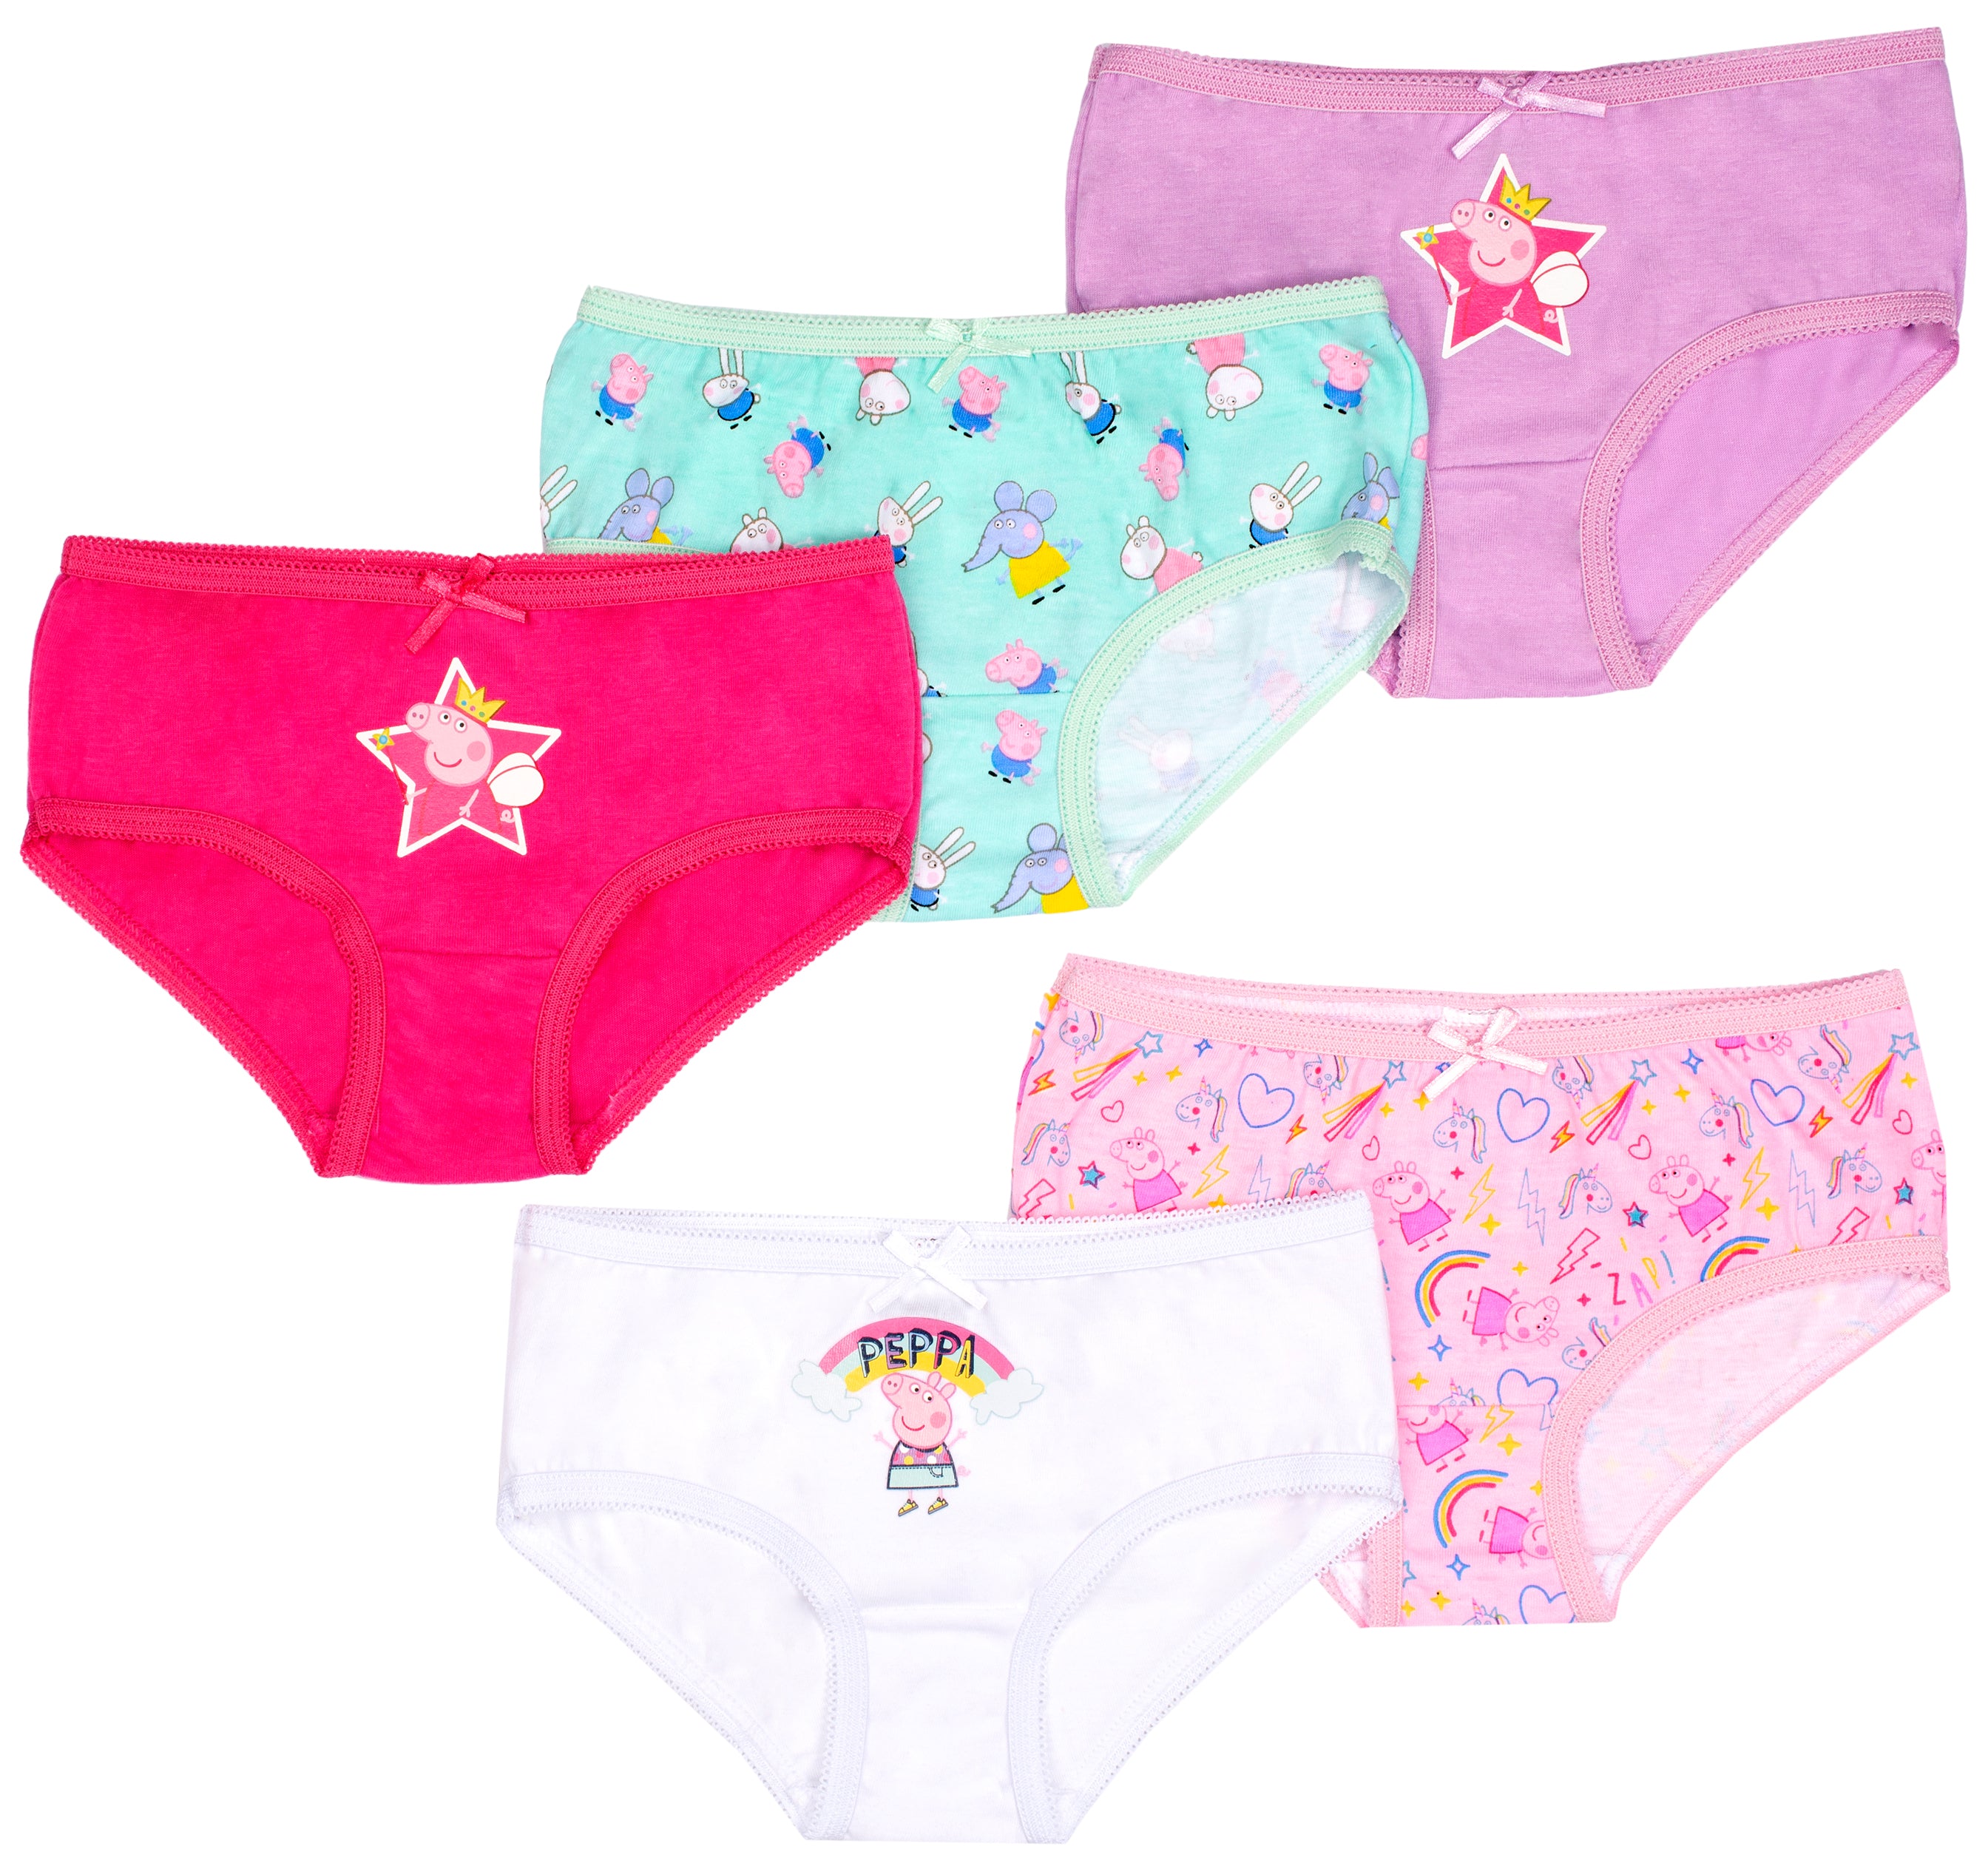 Peppa Pig Underwear Panties, 3-Pack (Toddler Girls) 